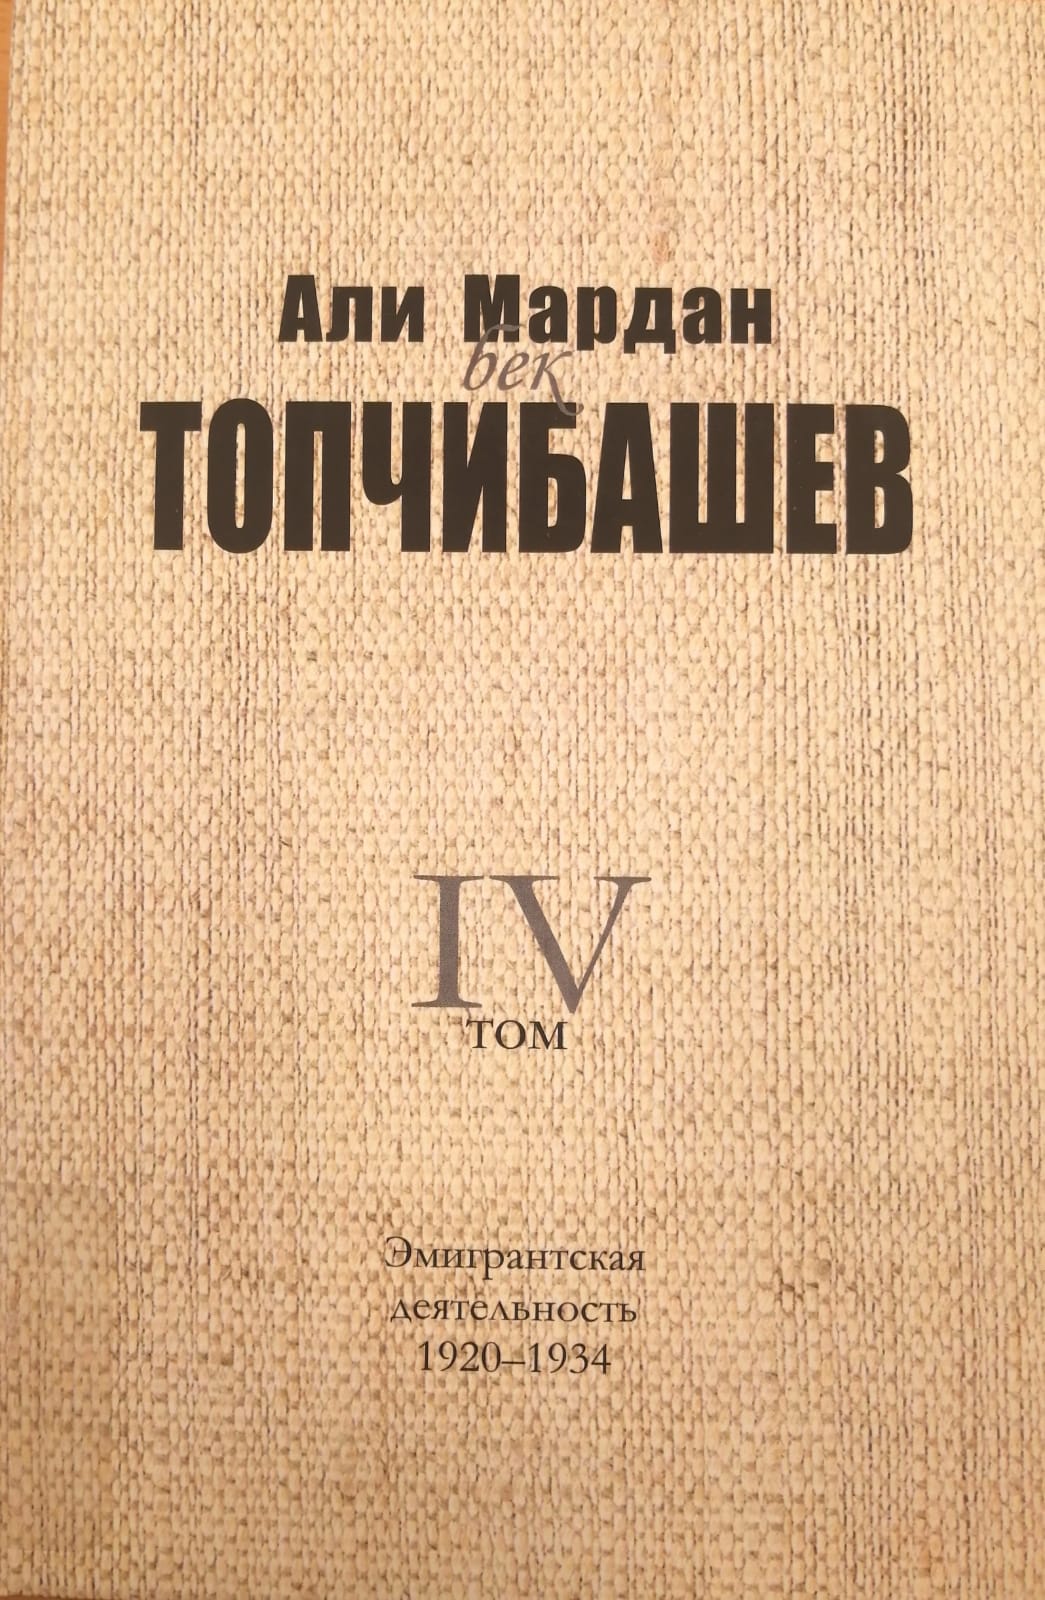 Али Мардан бек ТОПЧИБАШЕВ - Эмигрантская деятельность. 1920-1934, 4-ый том